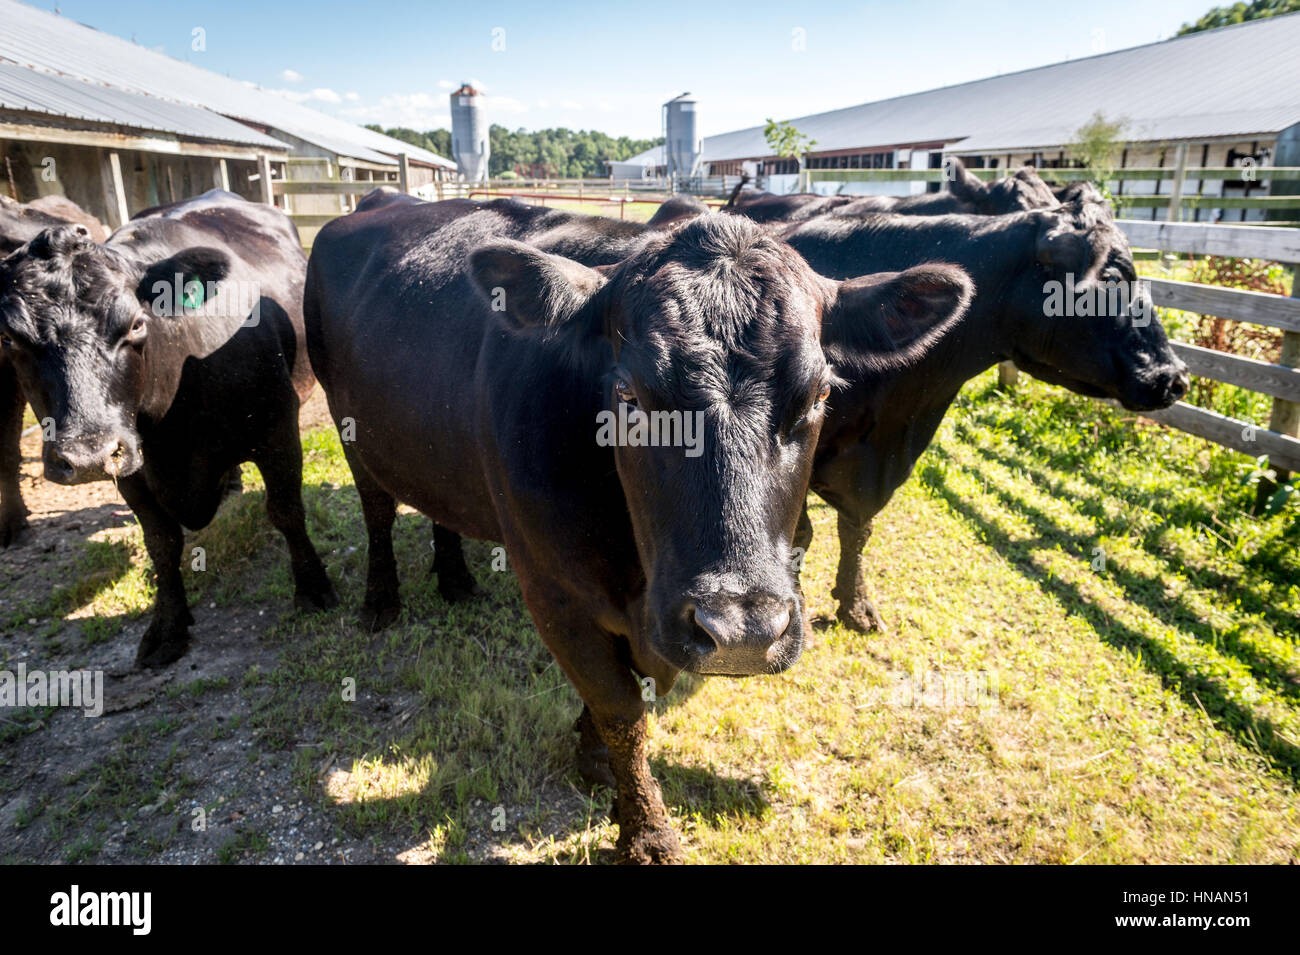 El ganado vacuno en una granja local de Maryland. Foto de stock